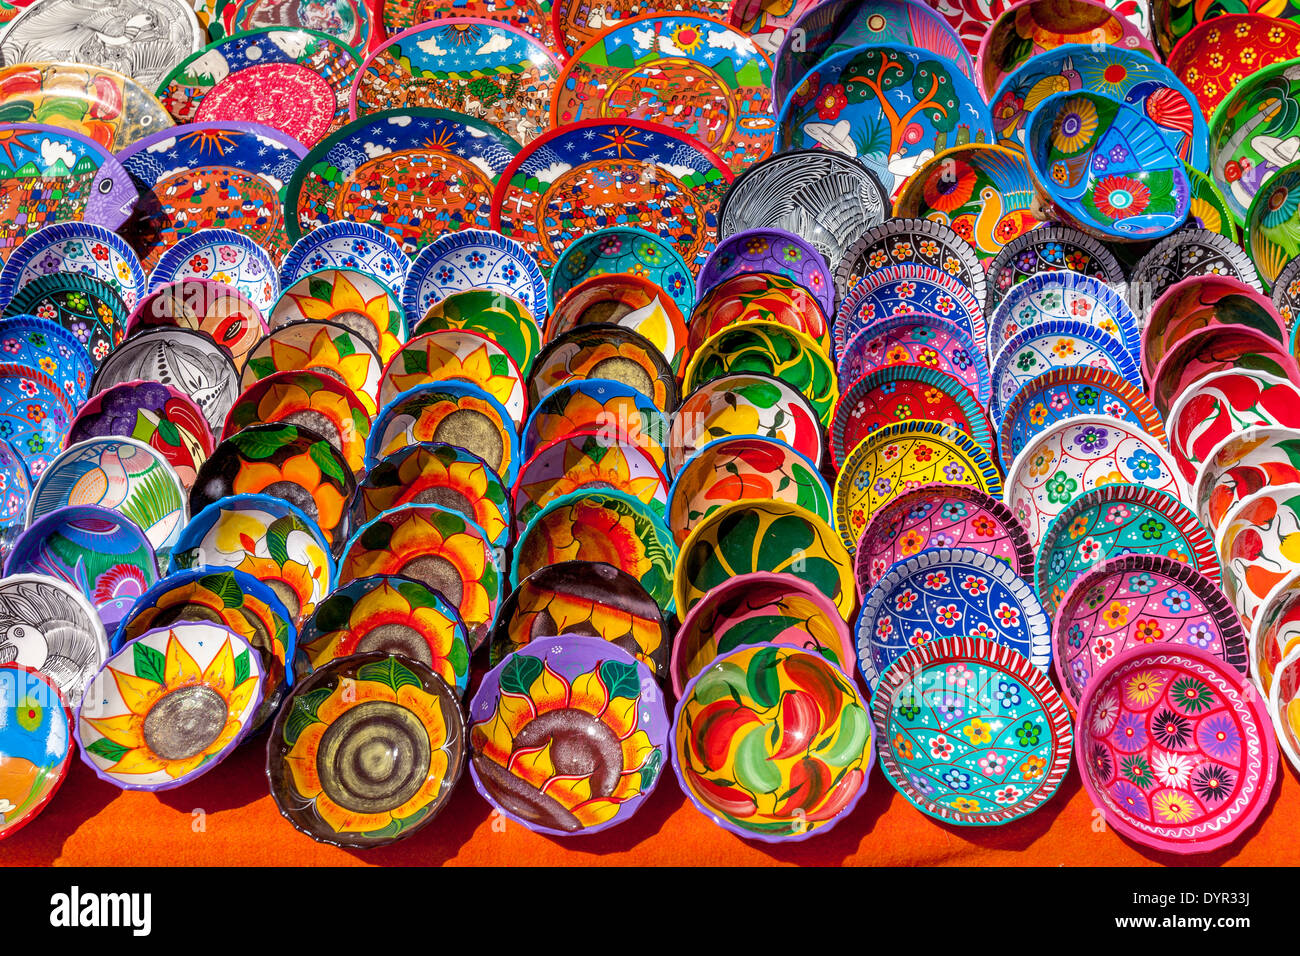 Colourful Handicrafts For Sale, Chichen Itza, Yucatan, Mexico Stock Photo